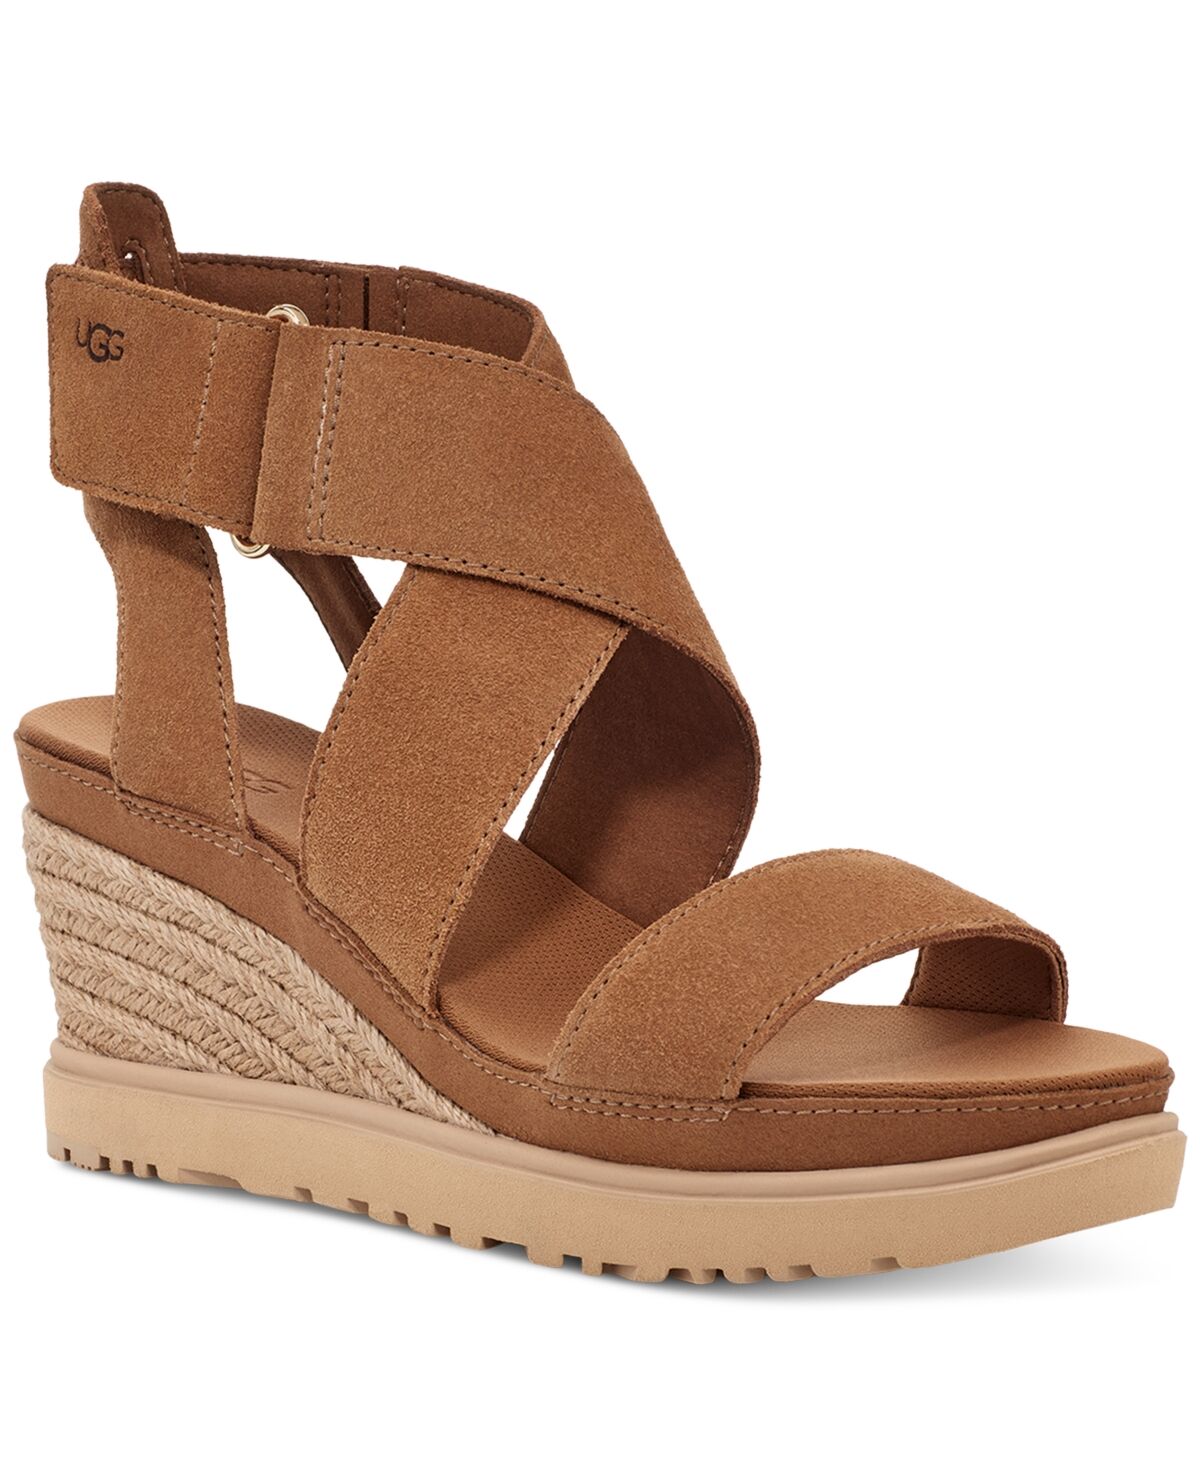 Ugg Women's Ileana Ankle-Strap Espadrille Platform Wedge Sandals - Chestnut